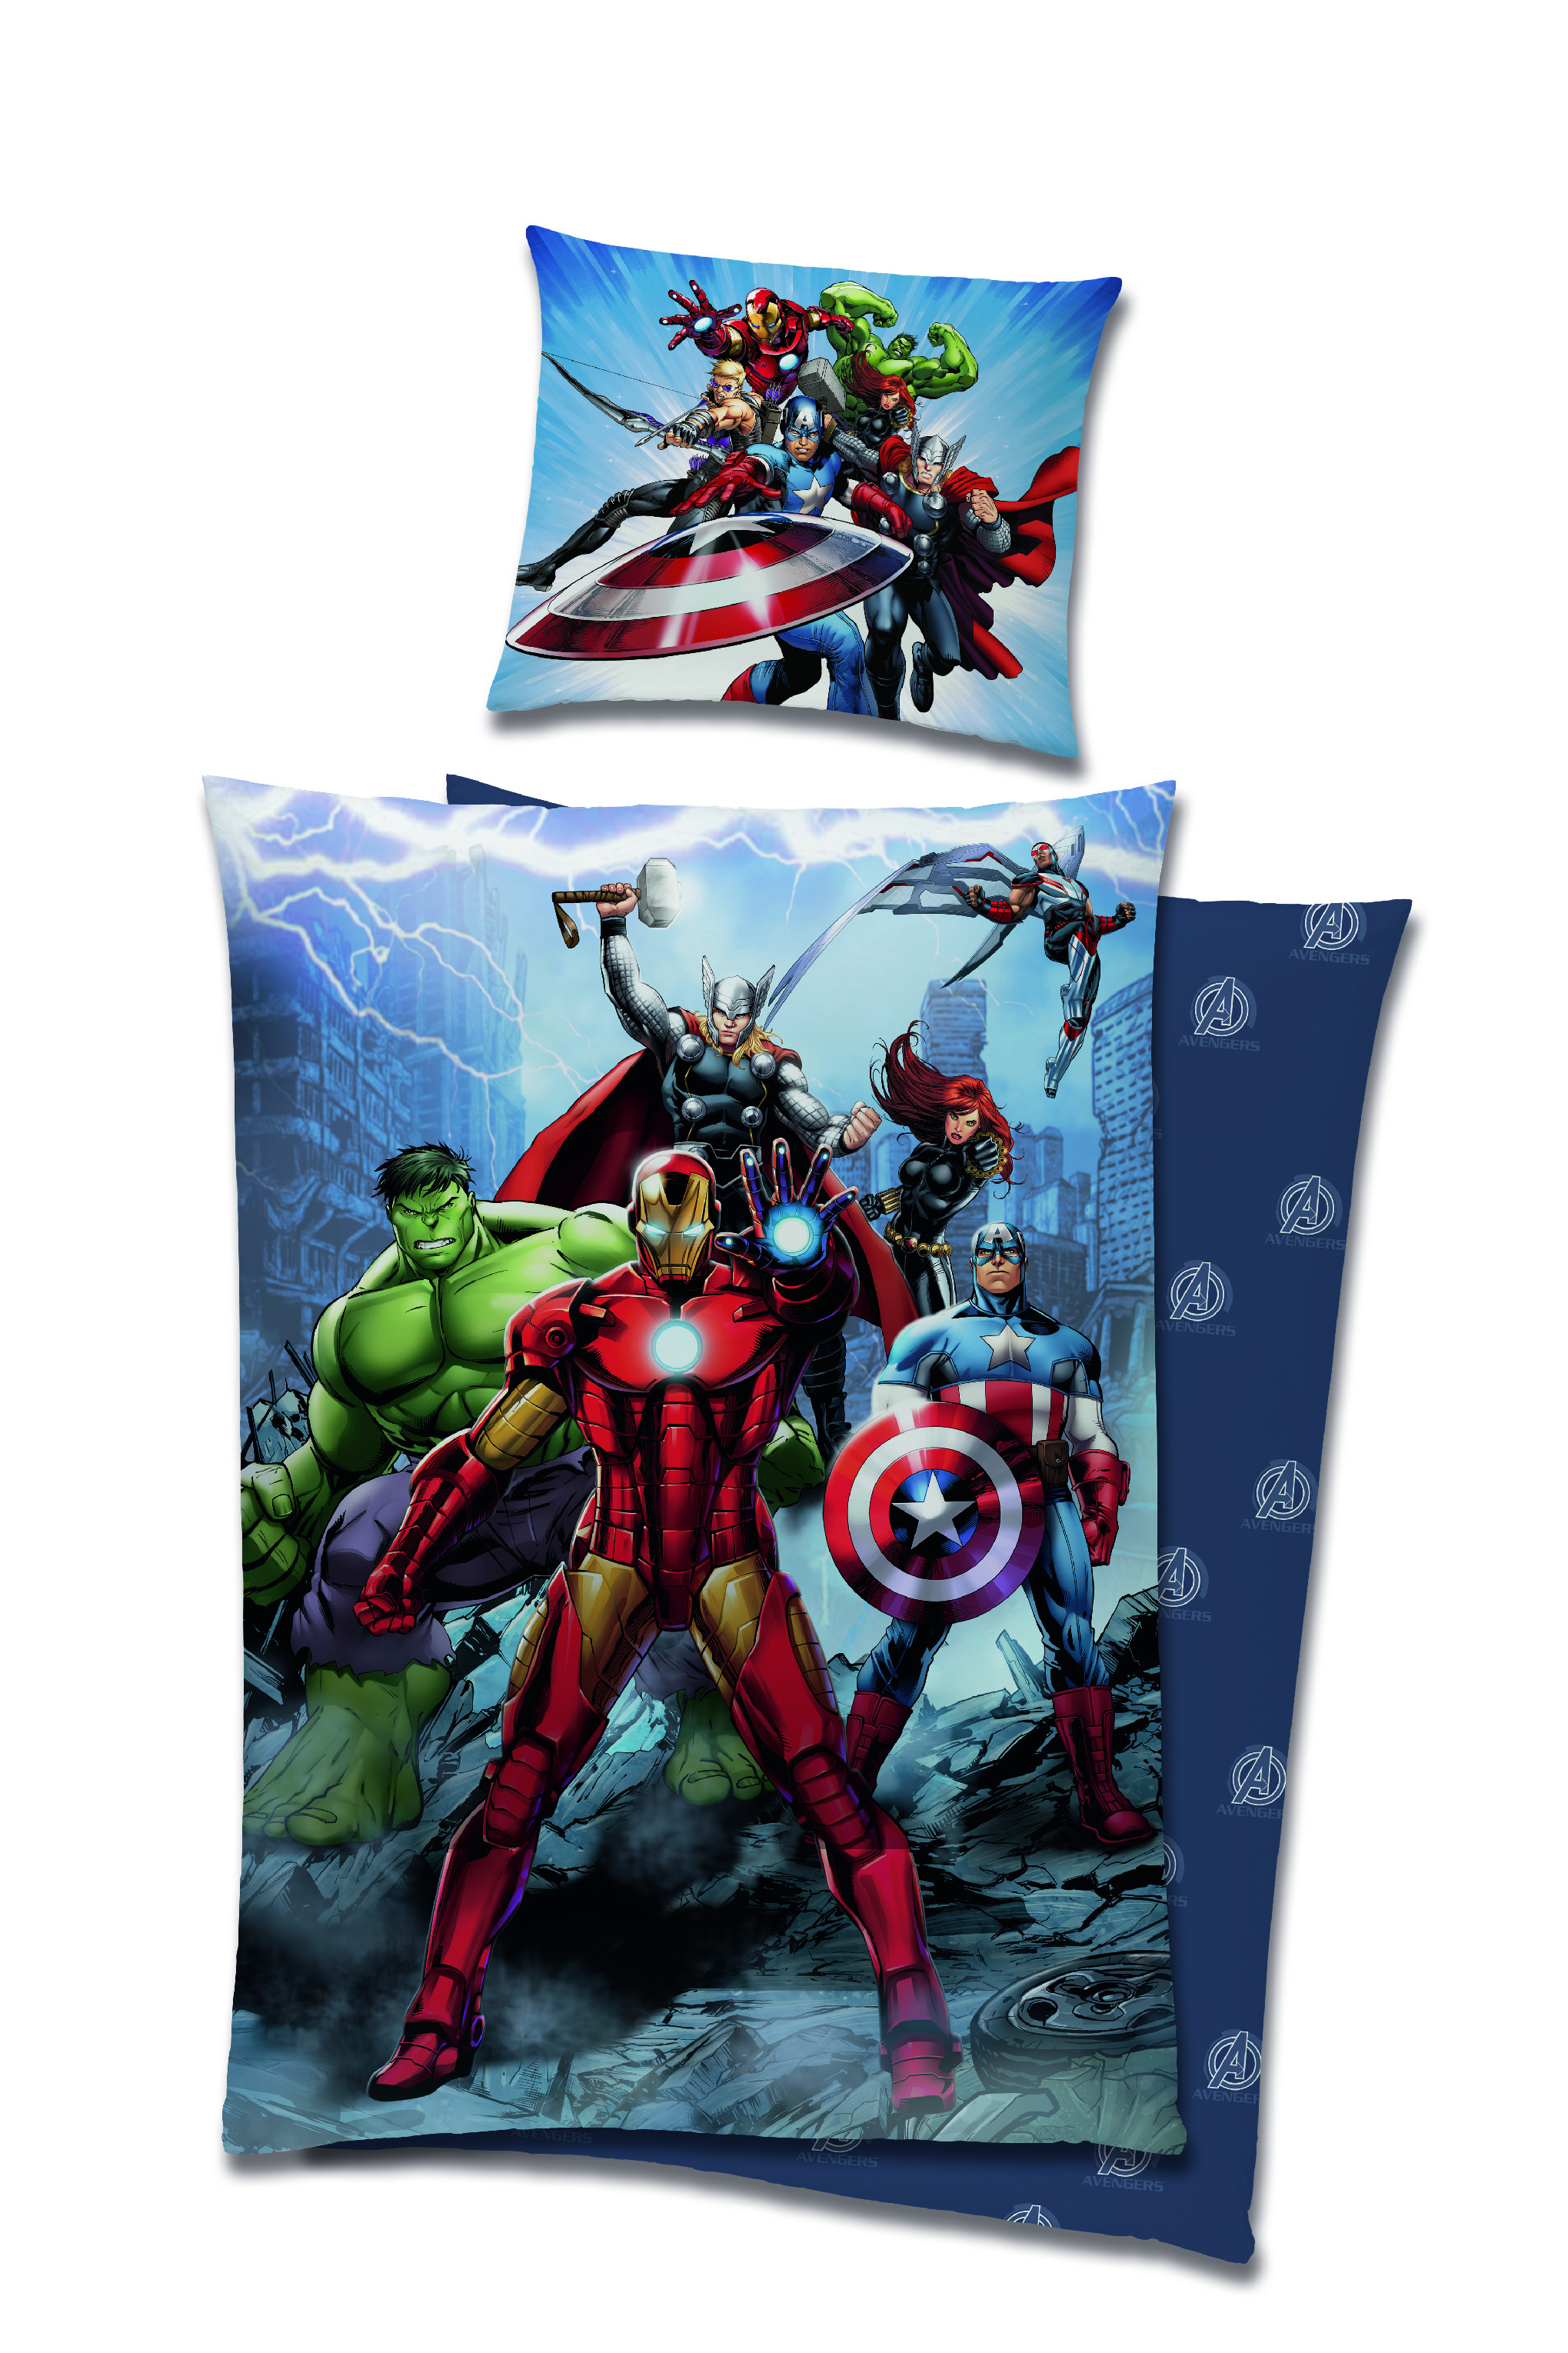 Carbotex Posteľné obliečky - Marvel Avengers 140 x 200 cm